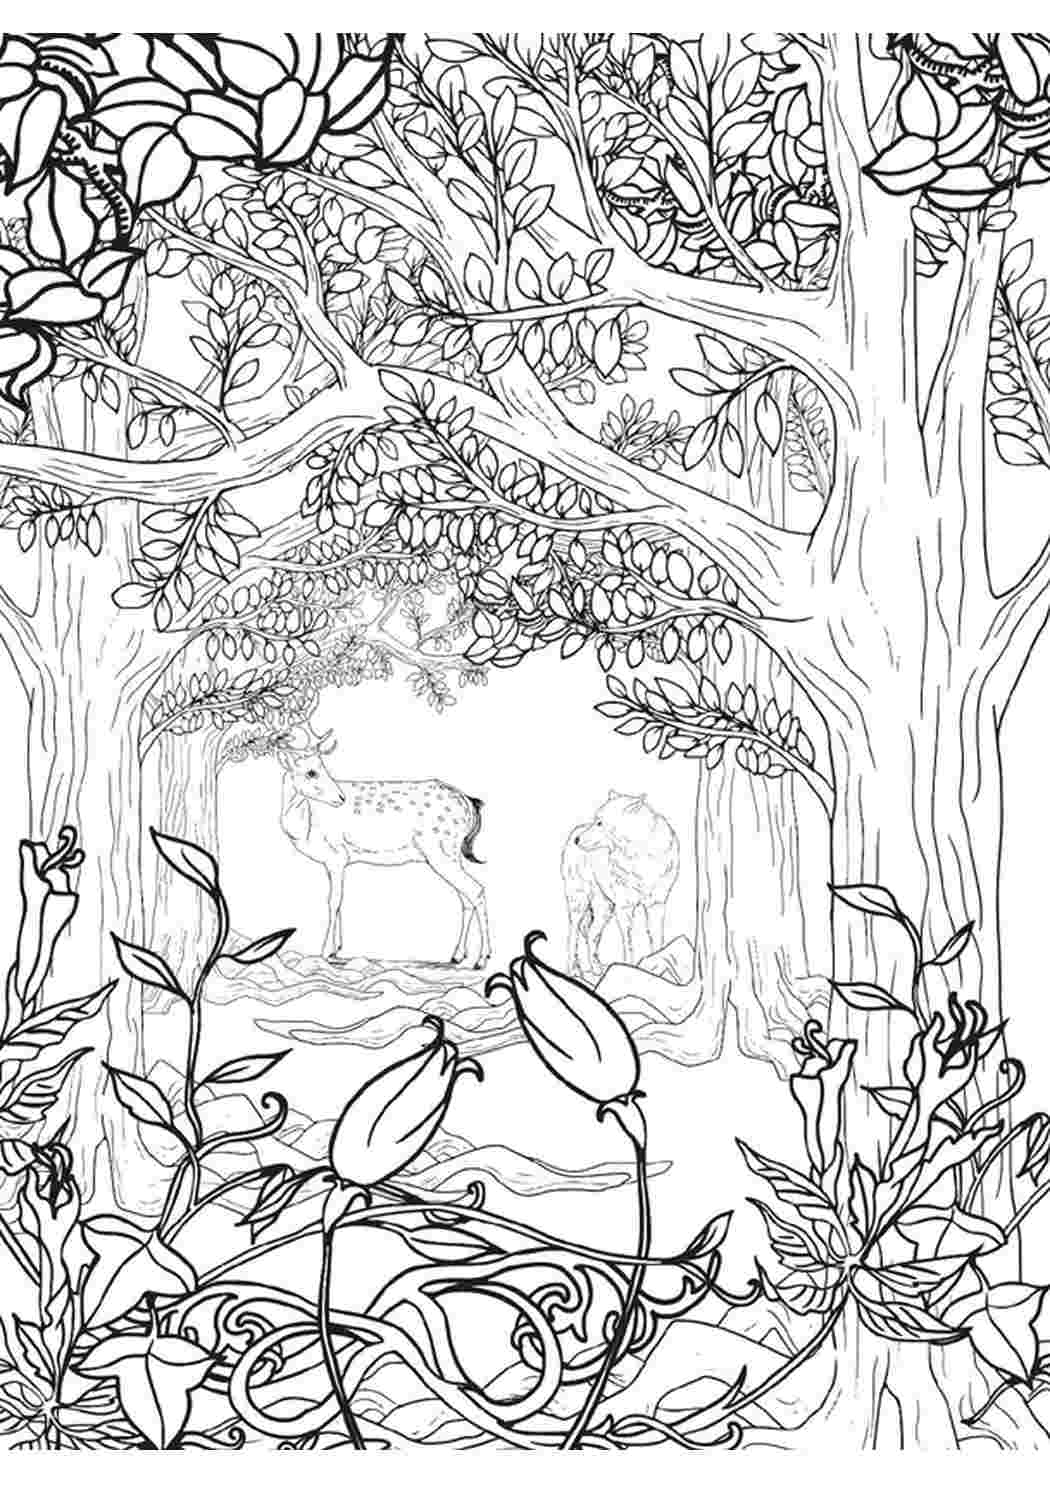 Раскраски раскраски для взрослых раскраска волшебный лес. Разукраска. раскраски для взрослых раскраска волшебный лес. Много раскрасок.